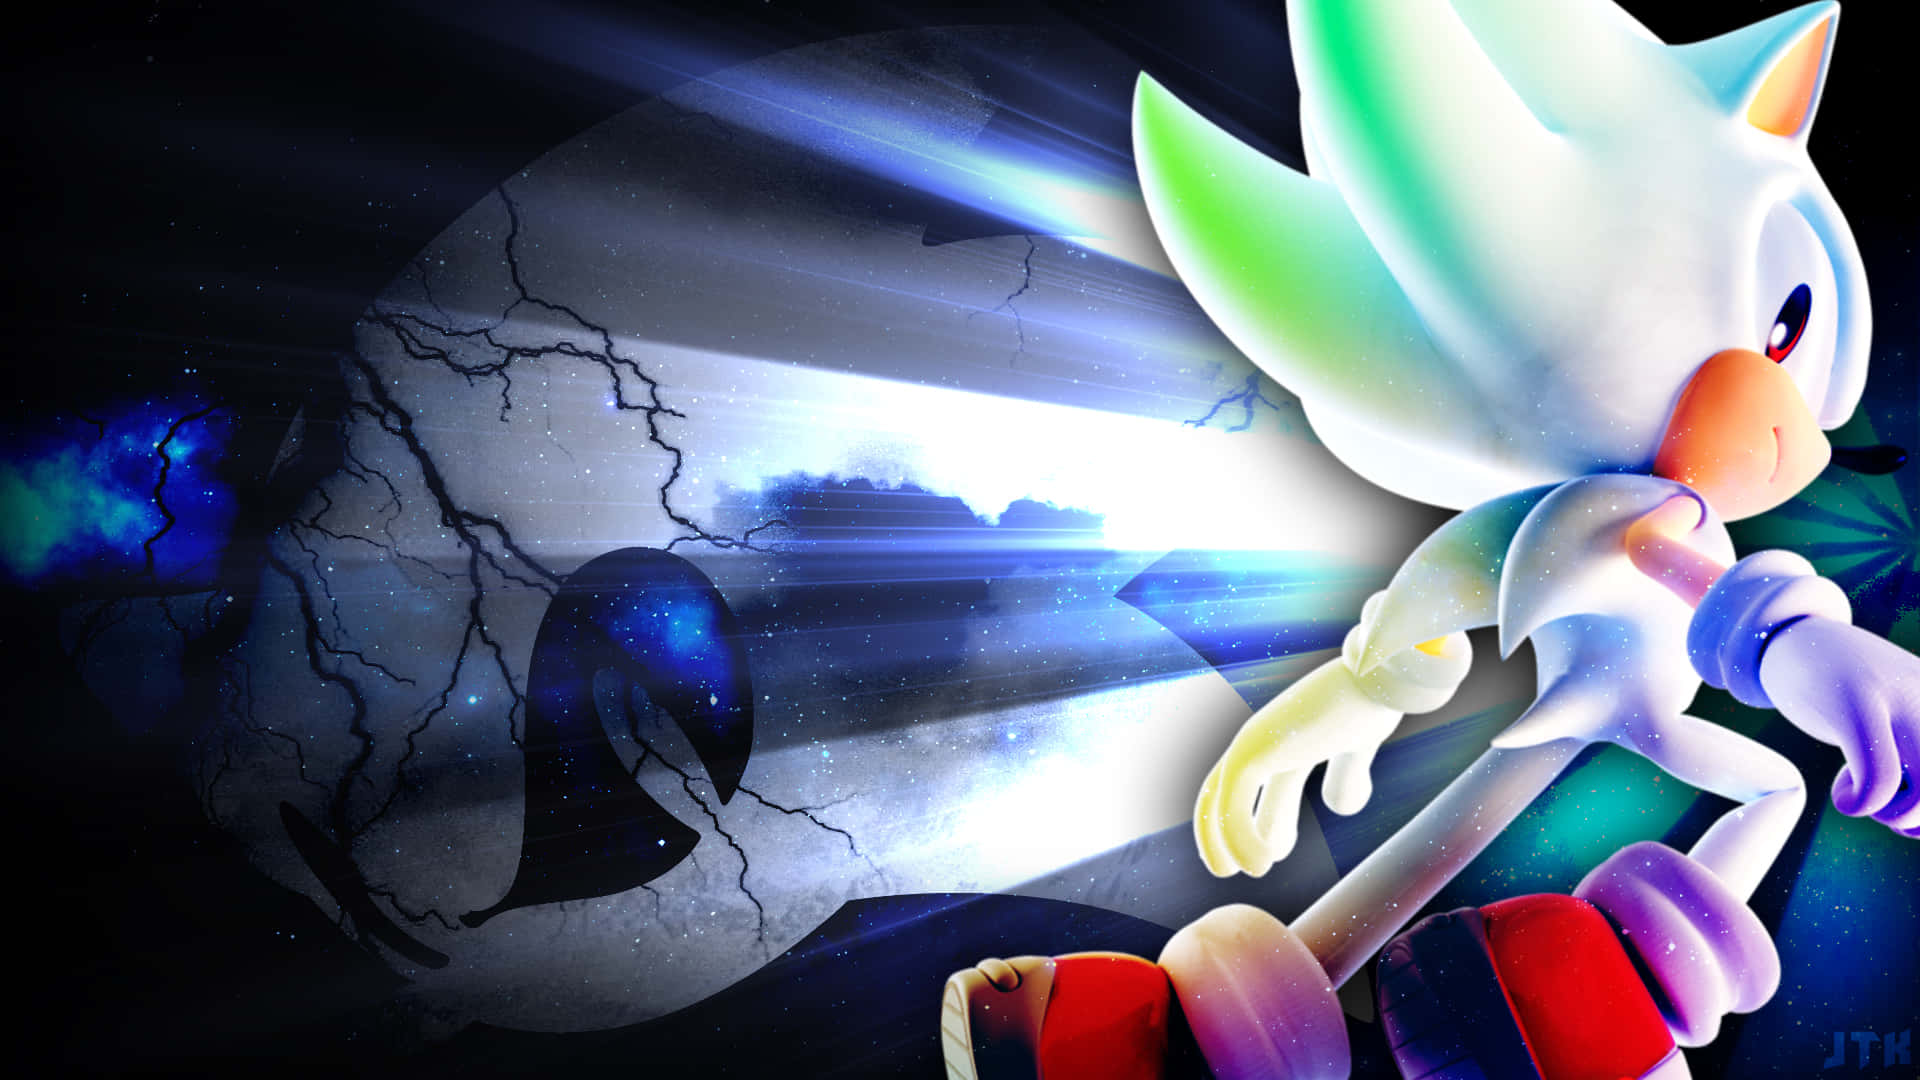 Sonicthe Hedgehog Exploderar I En Färgexplosion På Dator- Eller Mobilbakgrundsbilden! Wallpaper